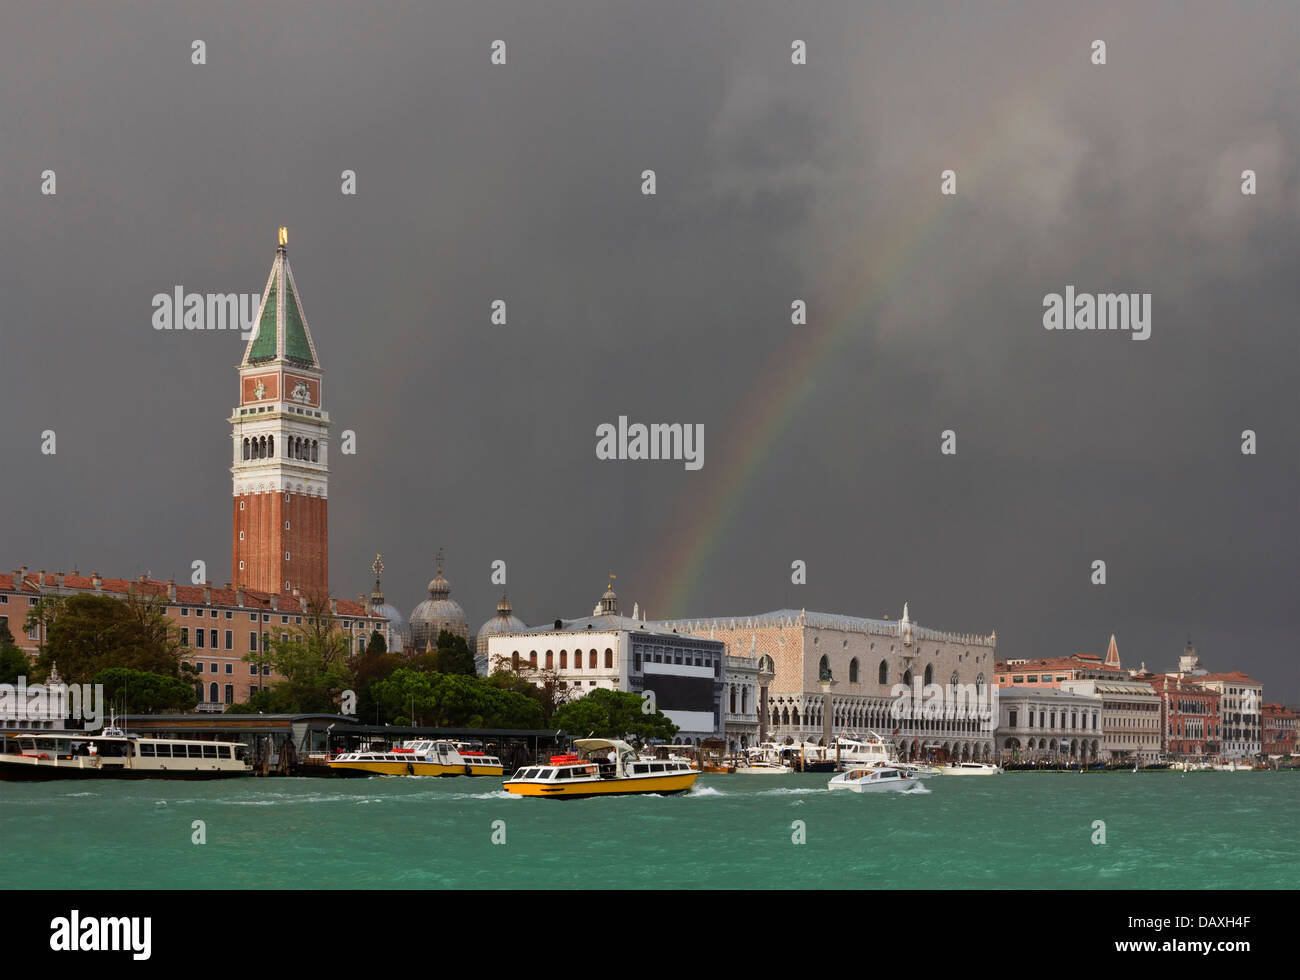 Après une énorme tempête, l arc-en-ciel coloré s'étend sur la Place Saint Marc à Venise, Italie illumine le paysage. Banque D'Images